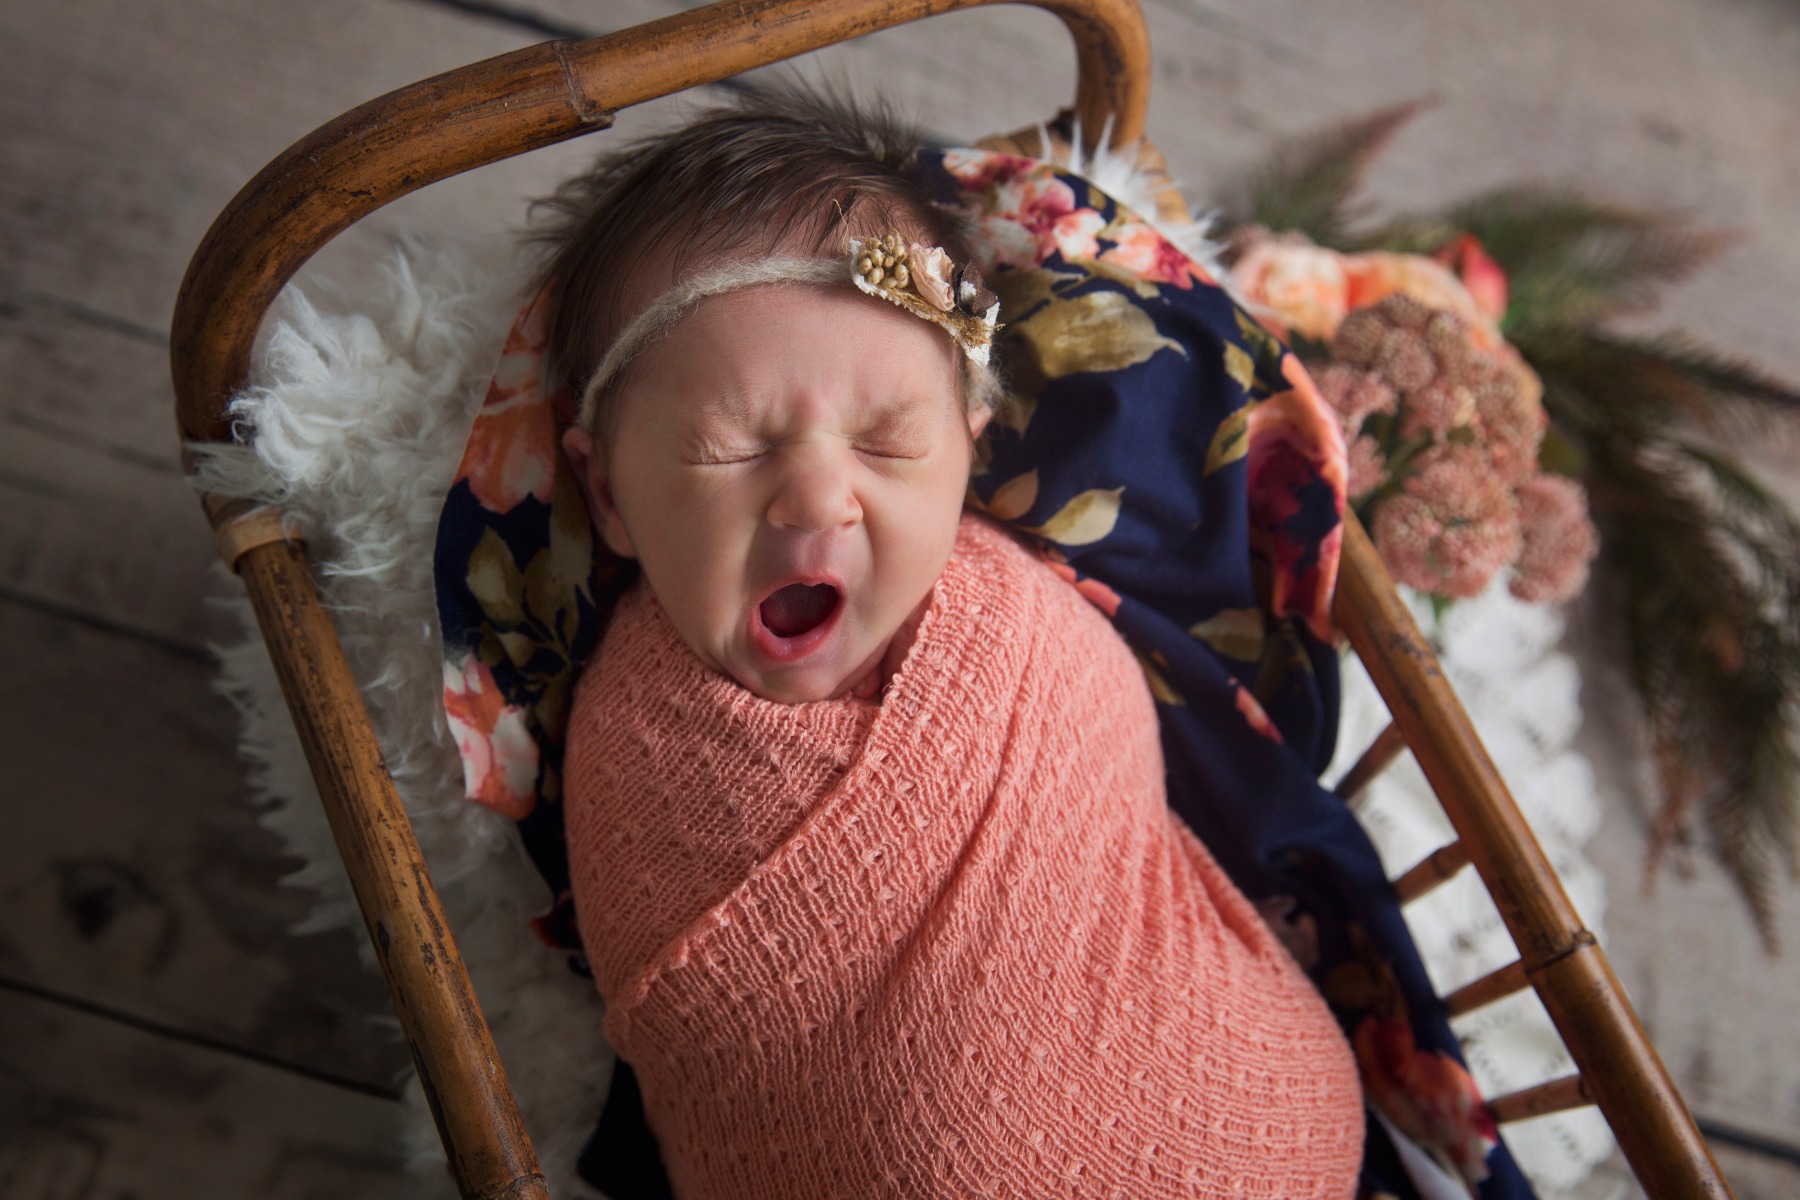 newborn baby swaddled in peach yawns in a crib